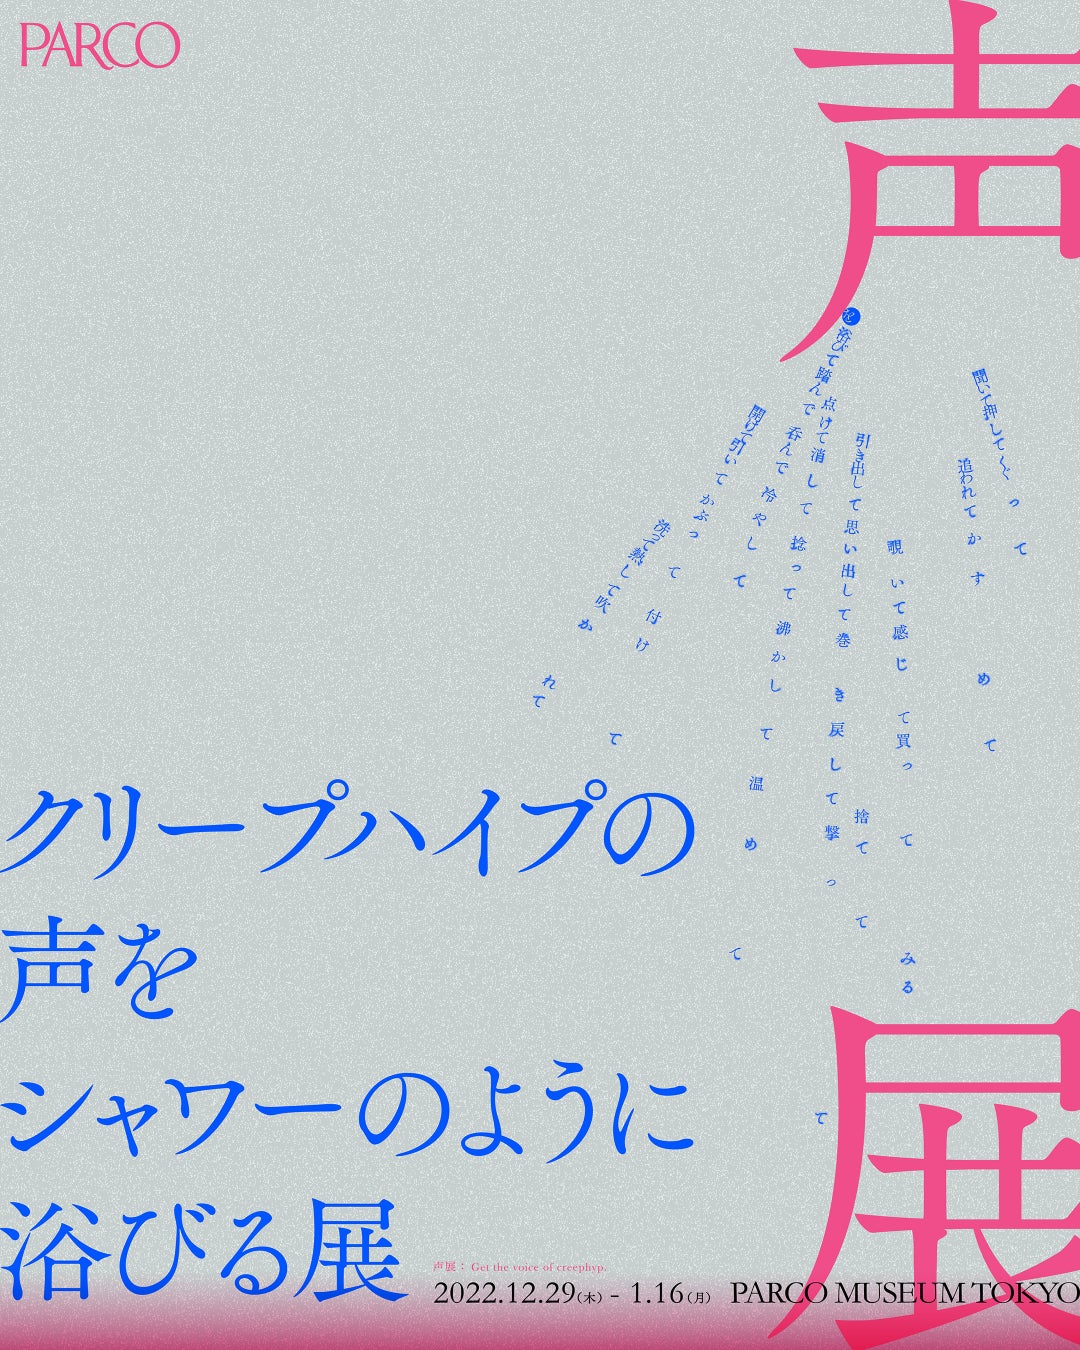 『クリープハイプの声をシャワーのように浴びる展』​渋谷PARCOで開催​